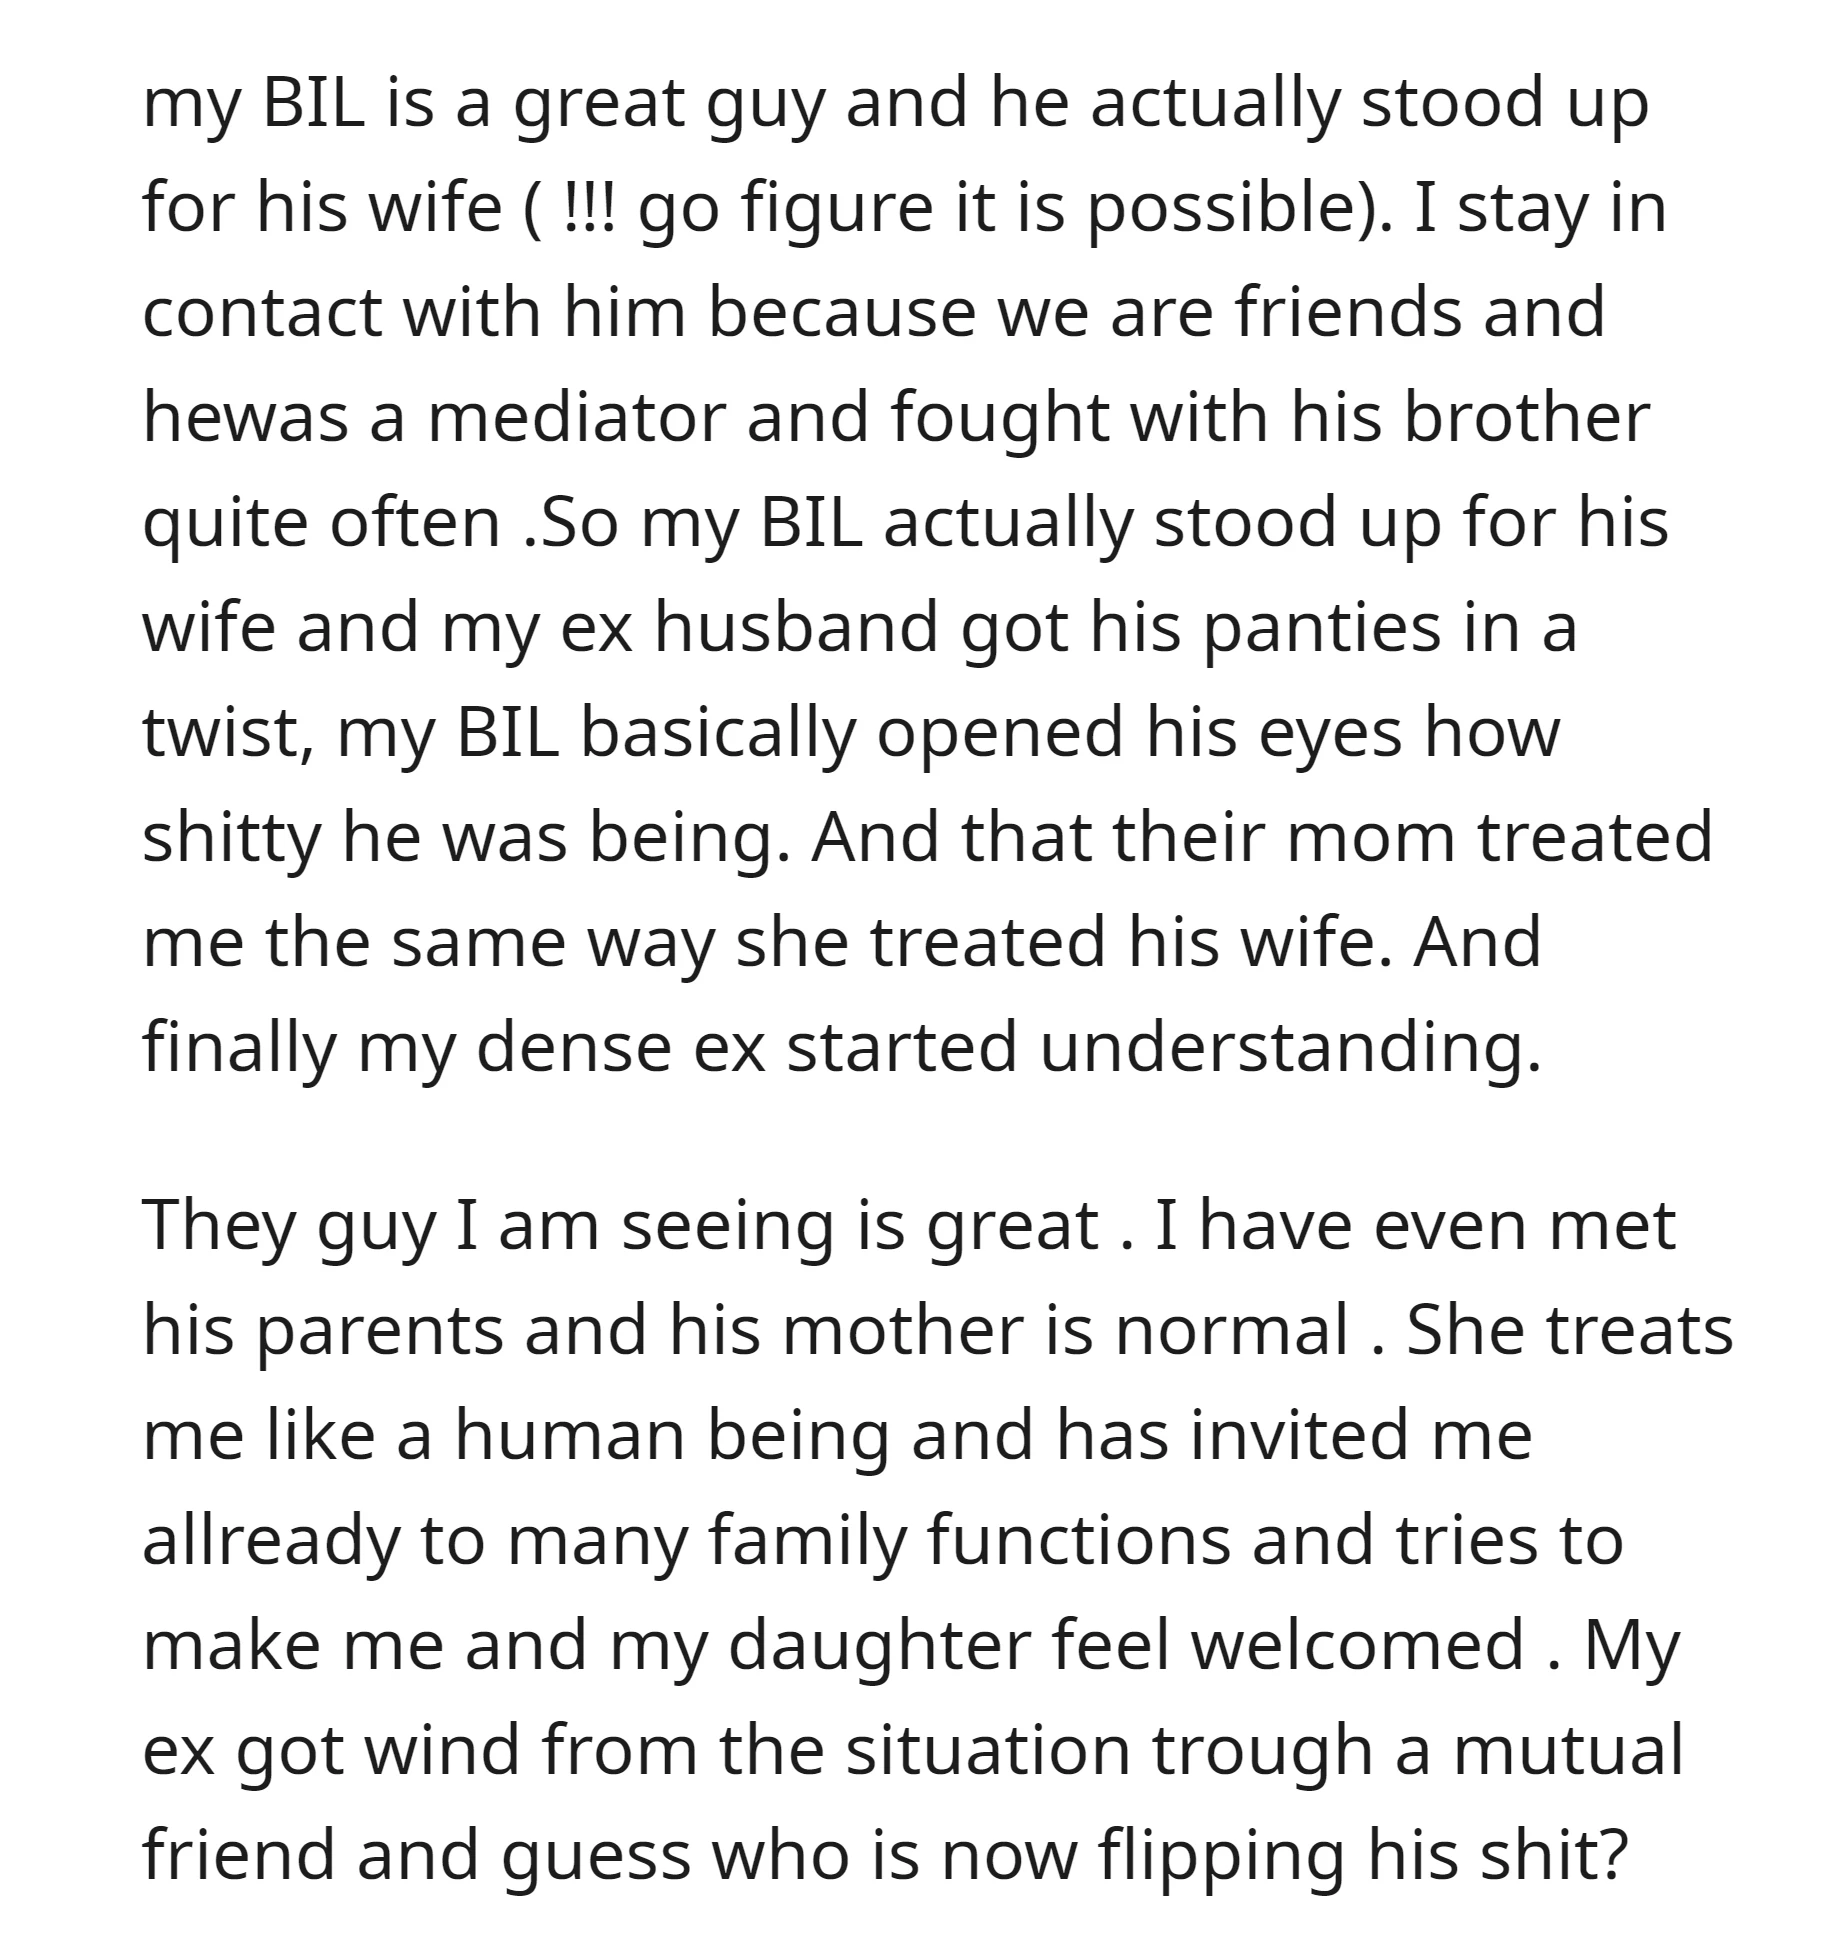 OP's ex-husband started understanding how bad he was